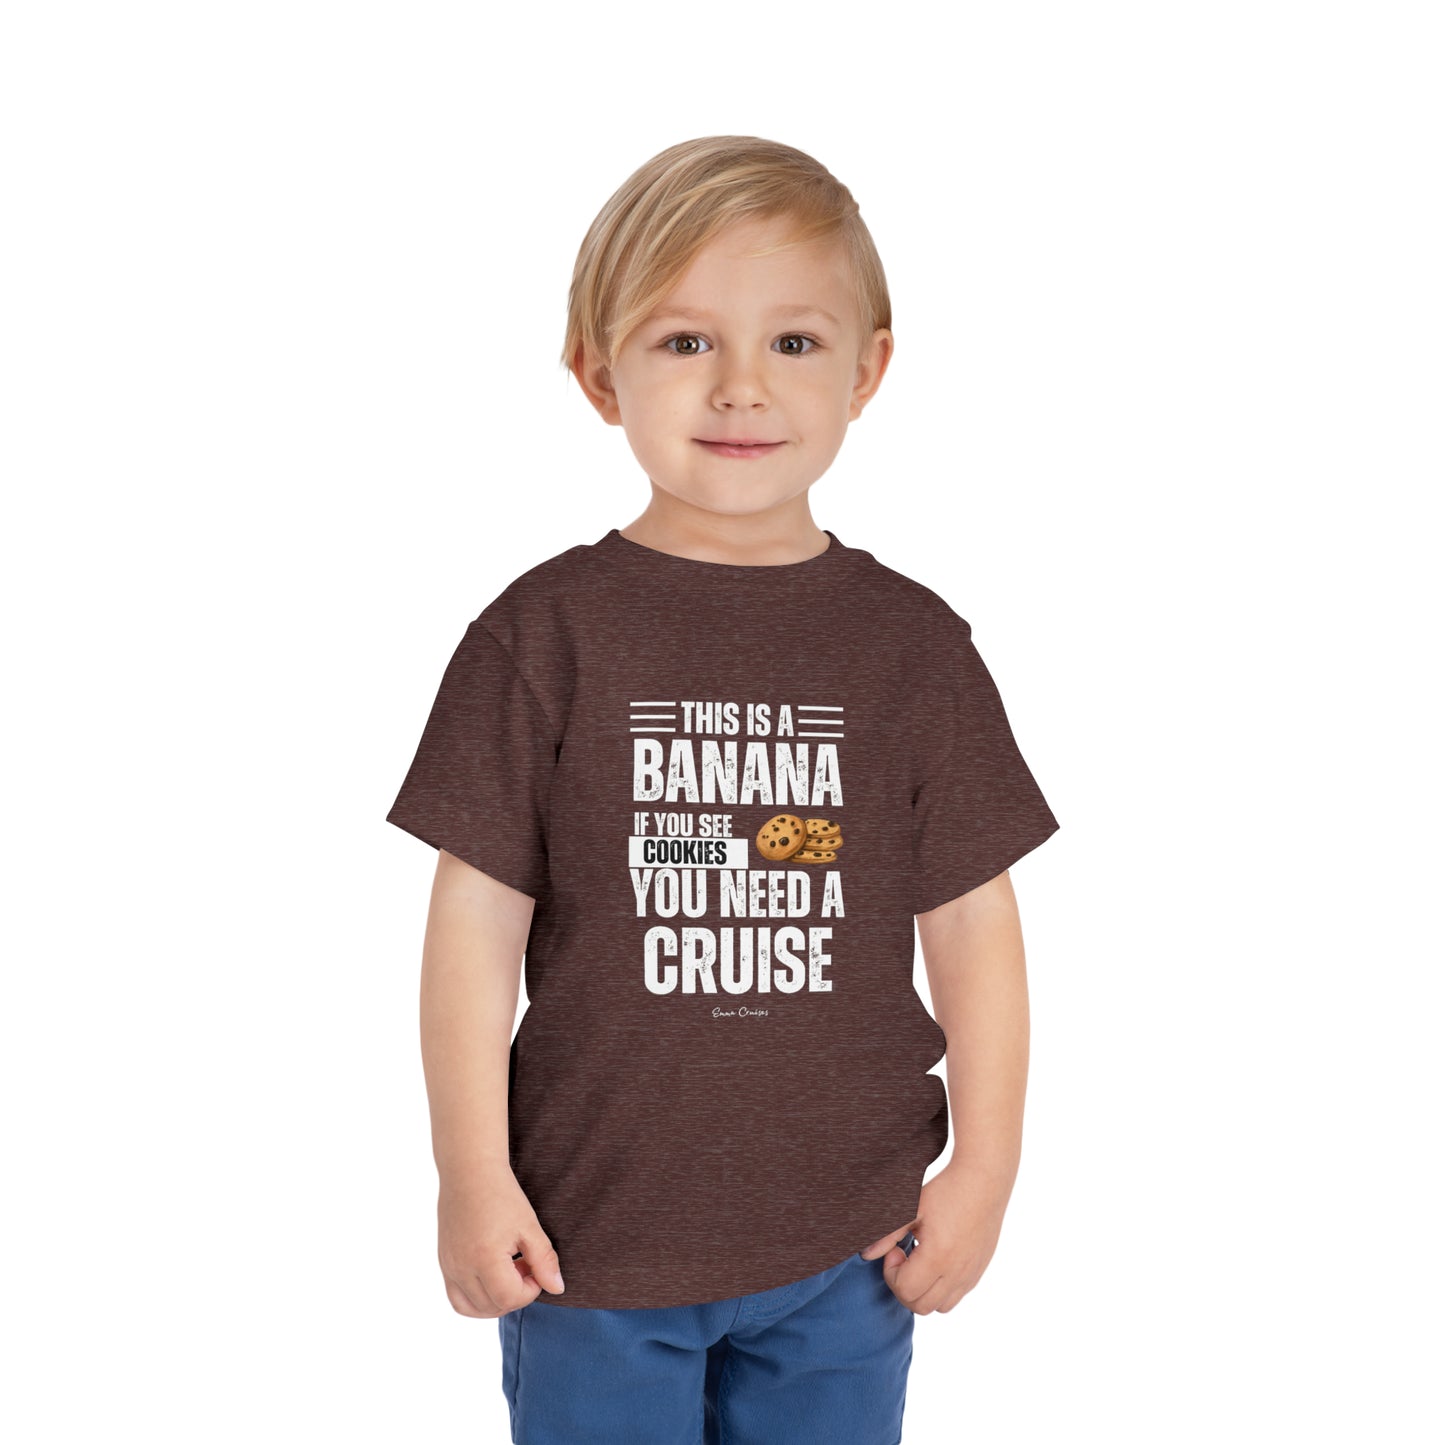 Si ves una galleta - Camiseta UNISEX para niños pequeños 